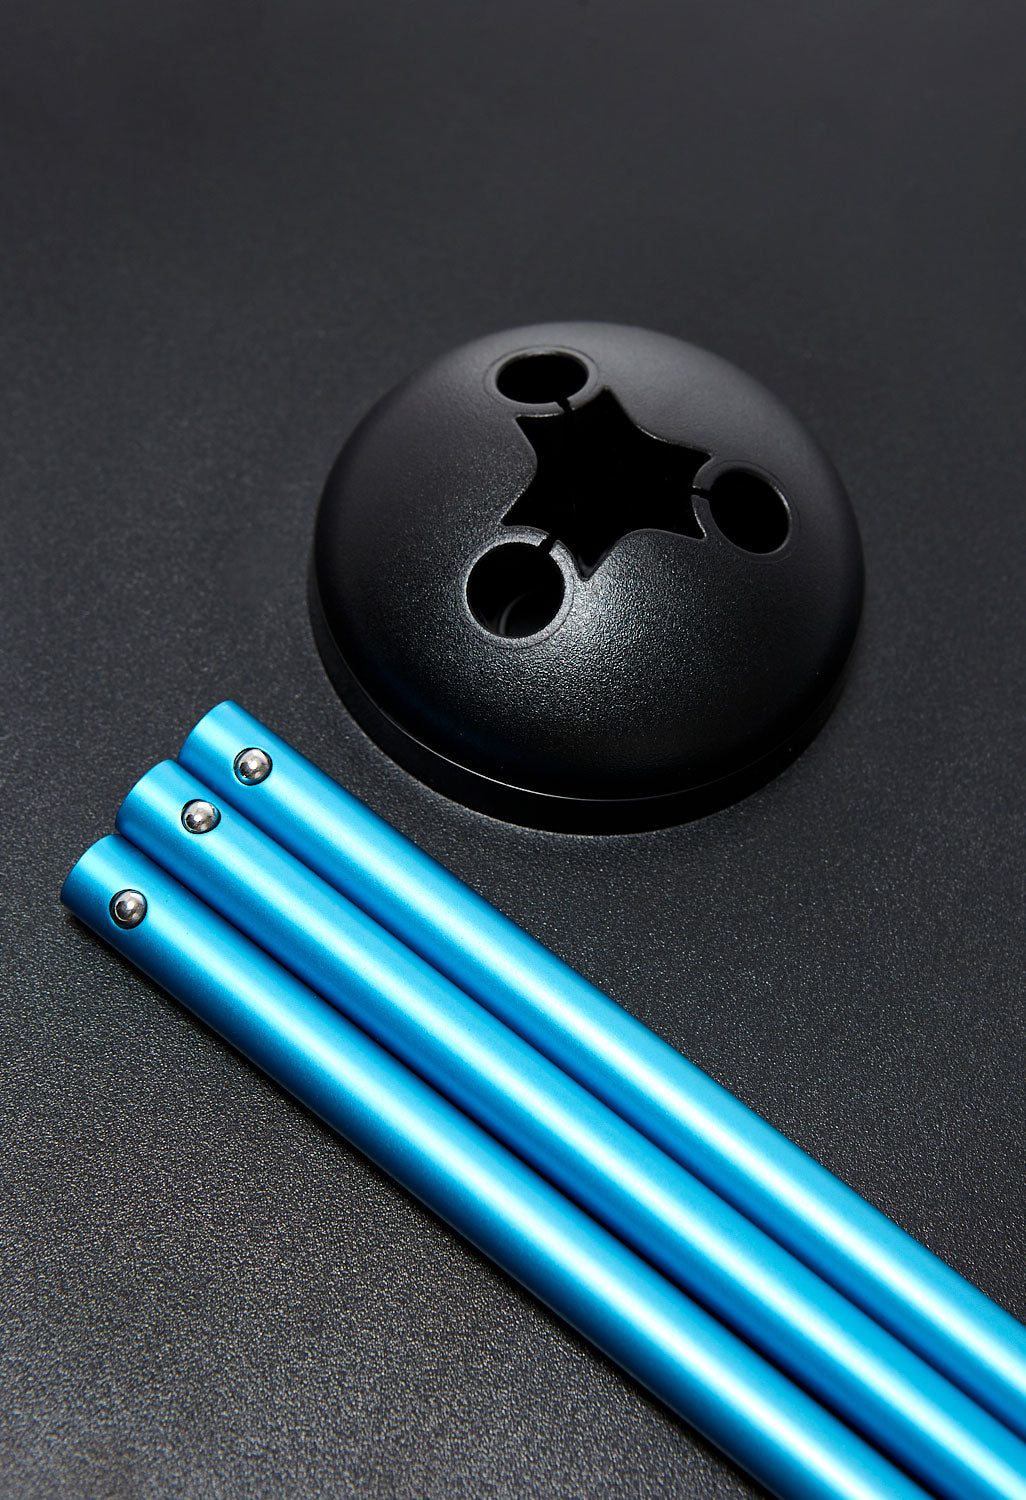 Helinox Side Table - Medium - Black/Blue